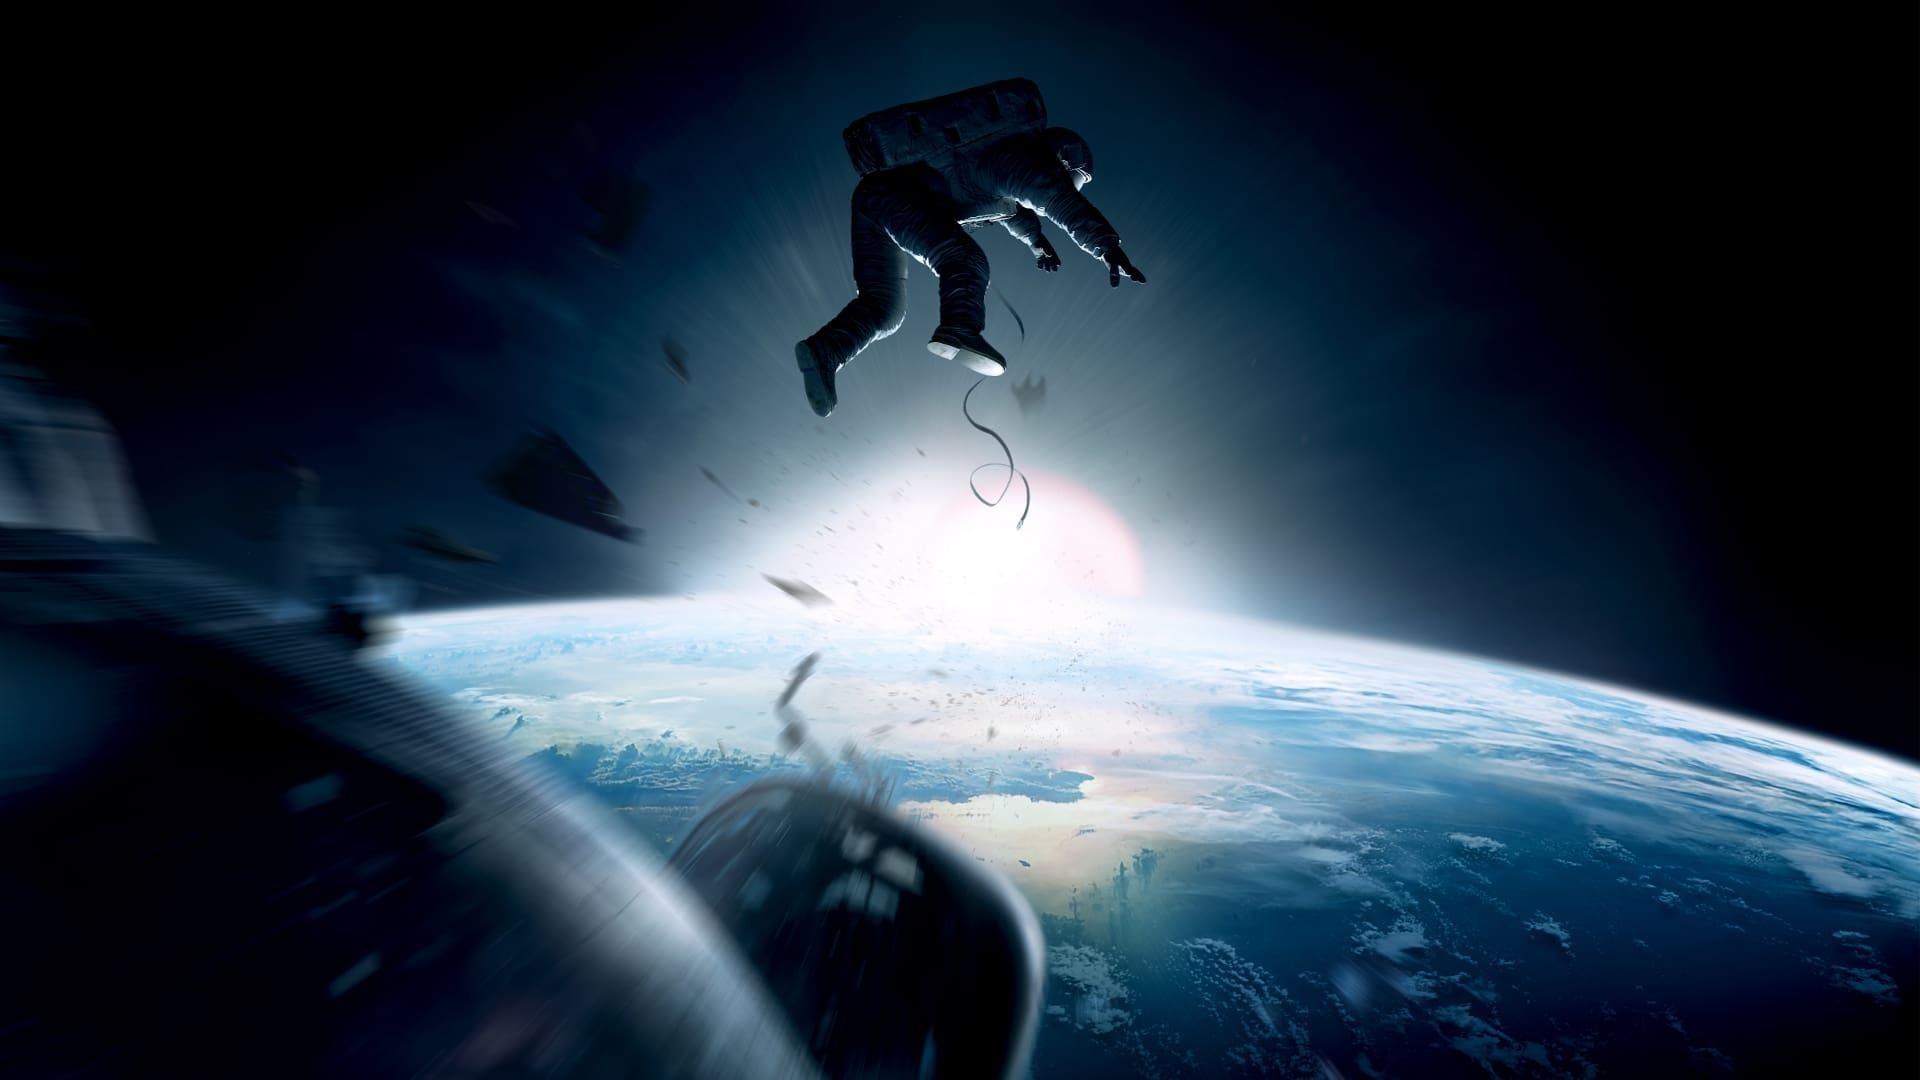 دانلود فیلم Gravity 2013